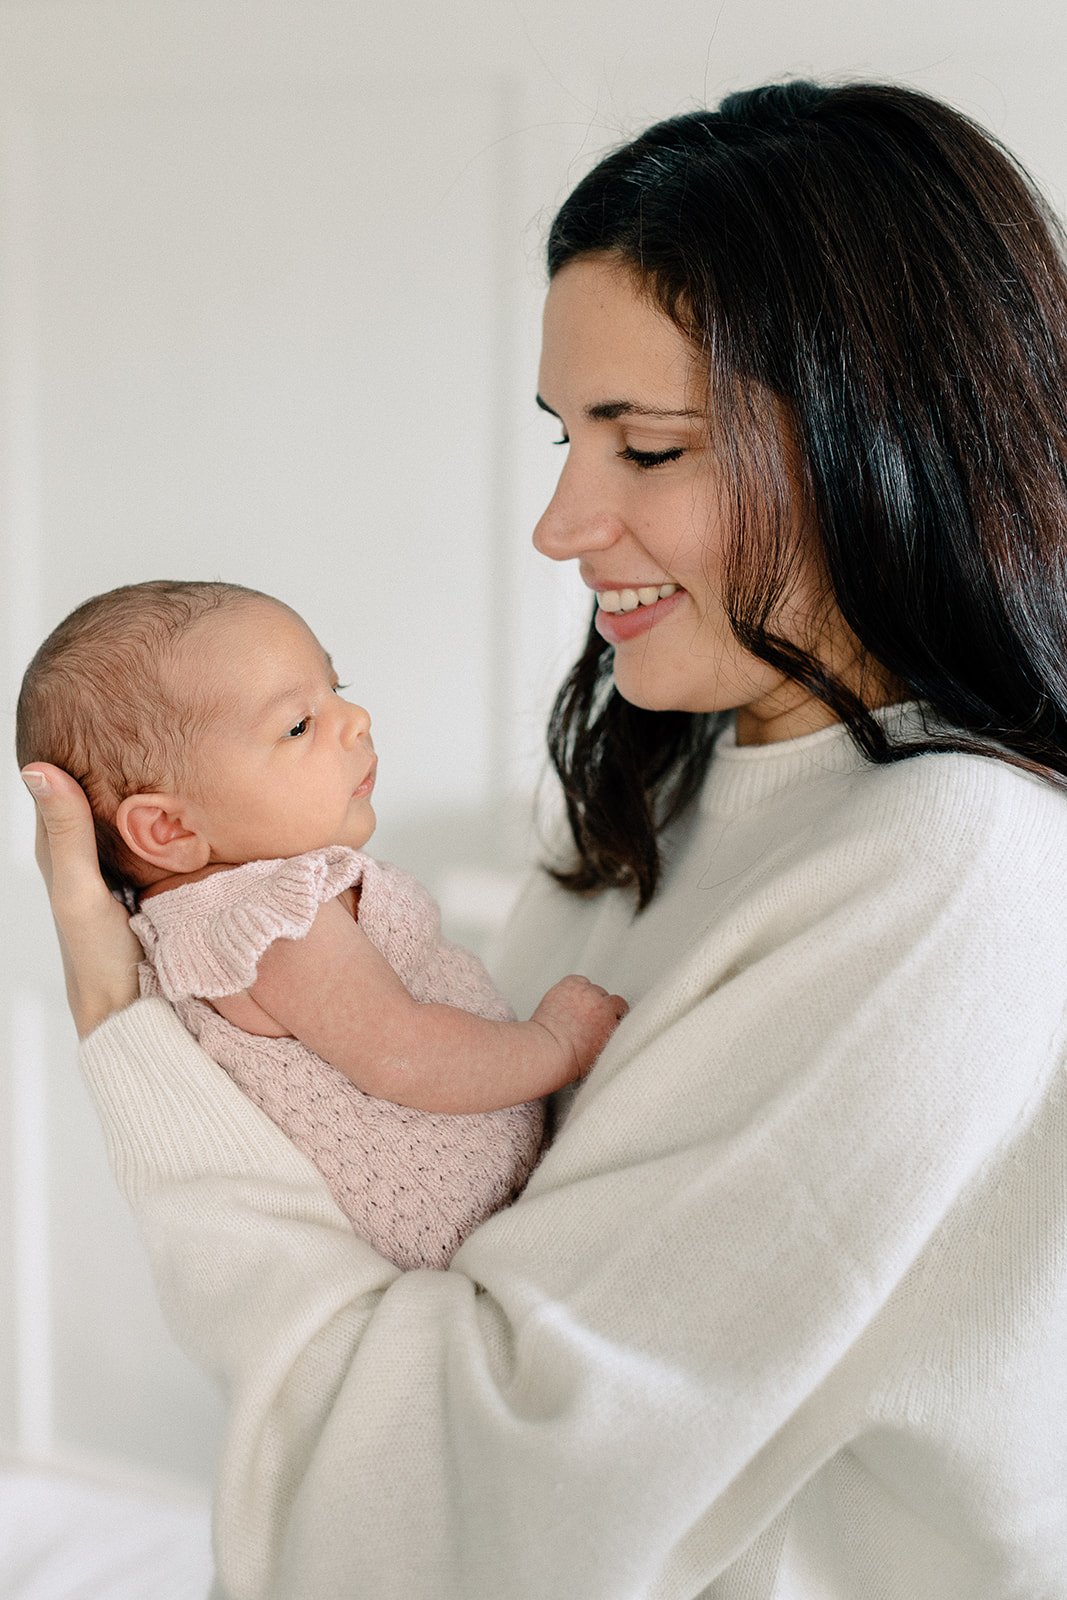  mum holdinh baby at newborn photographer shoot in tunbridge wells 